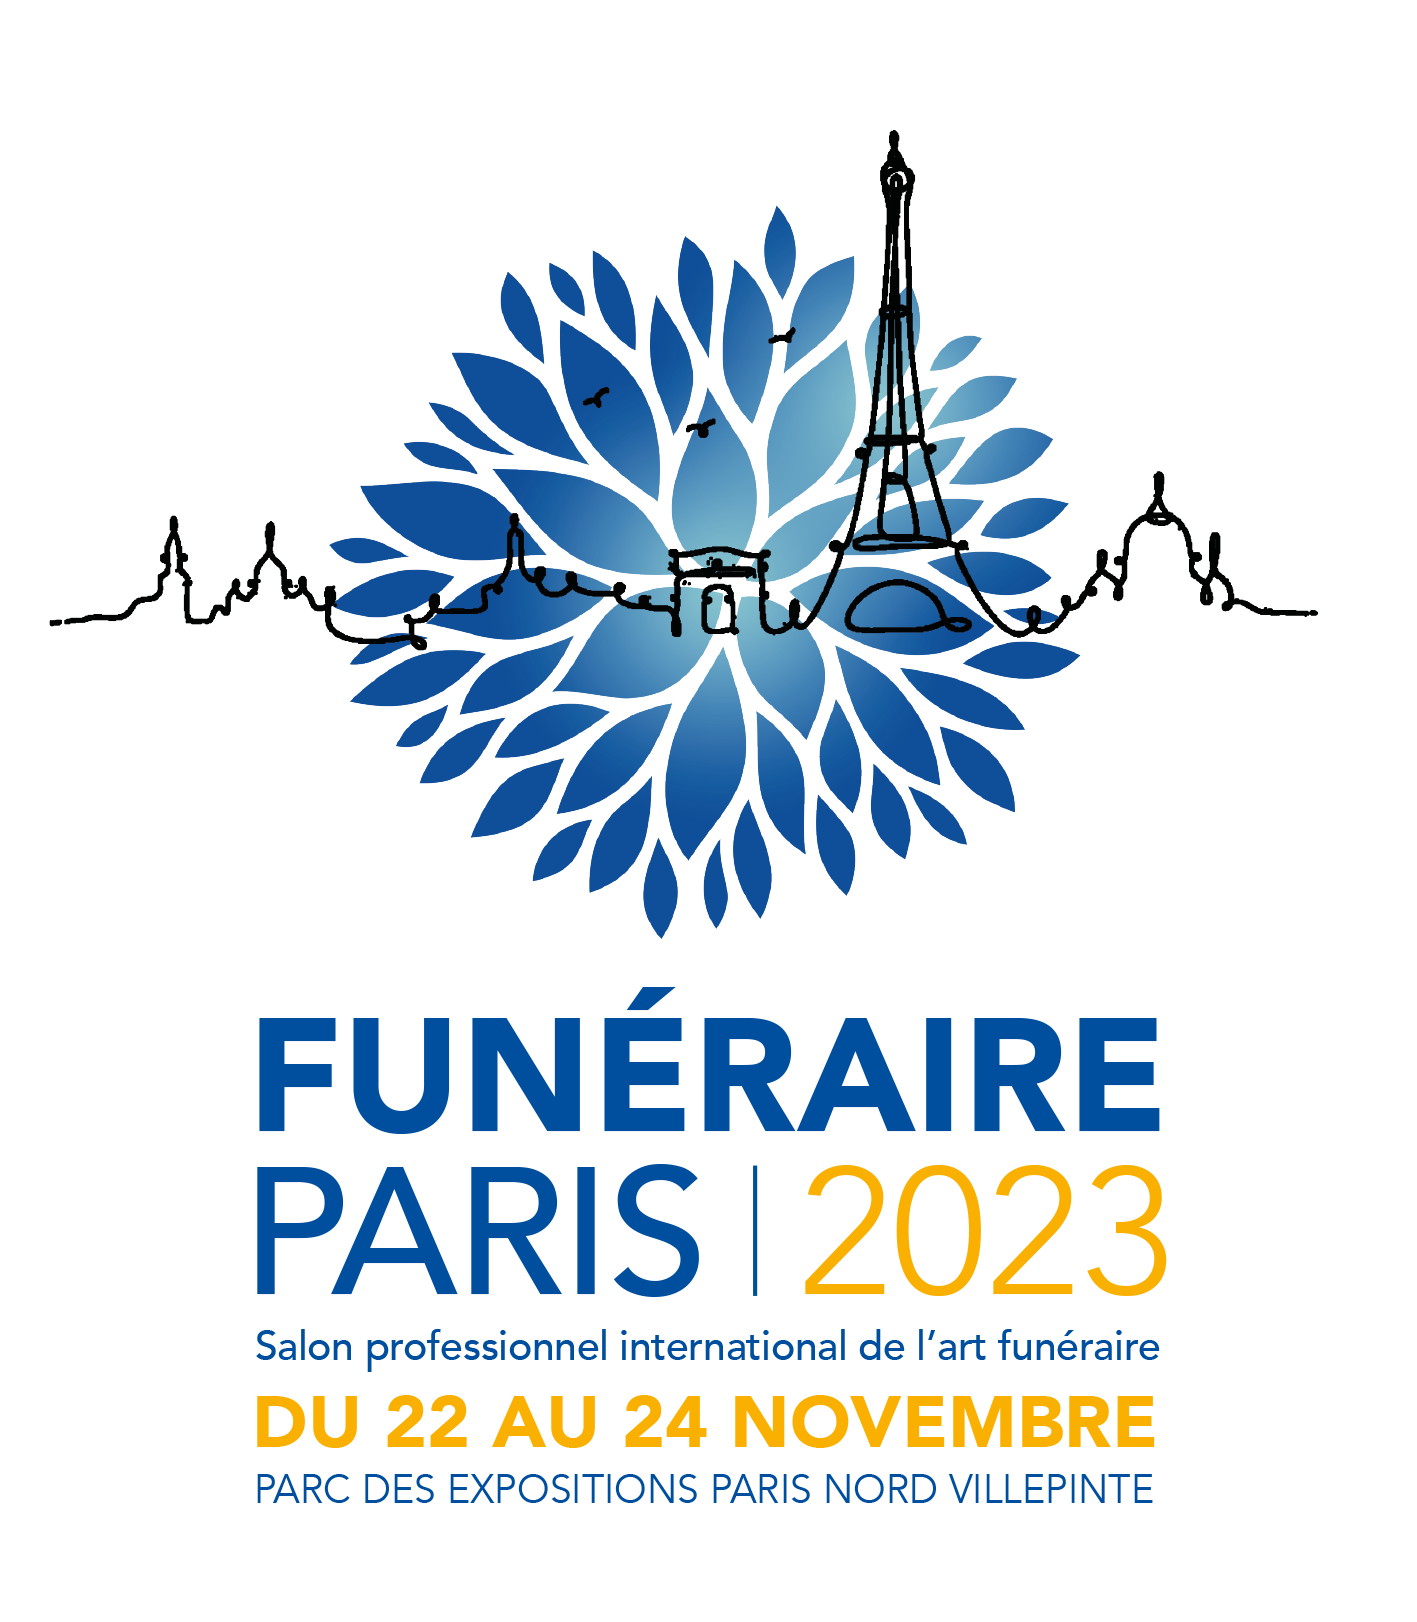 Funéraire Paris 2023